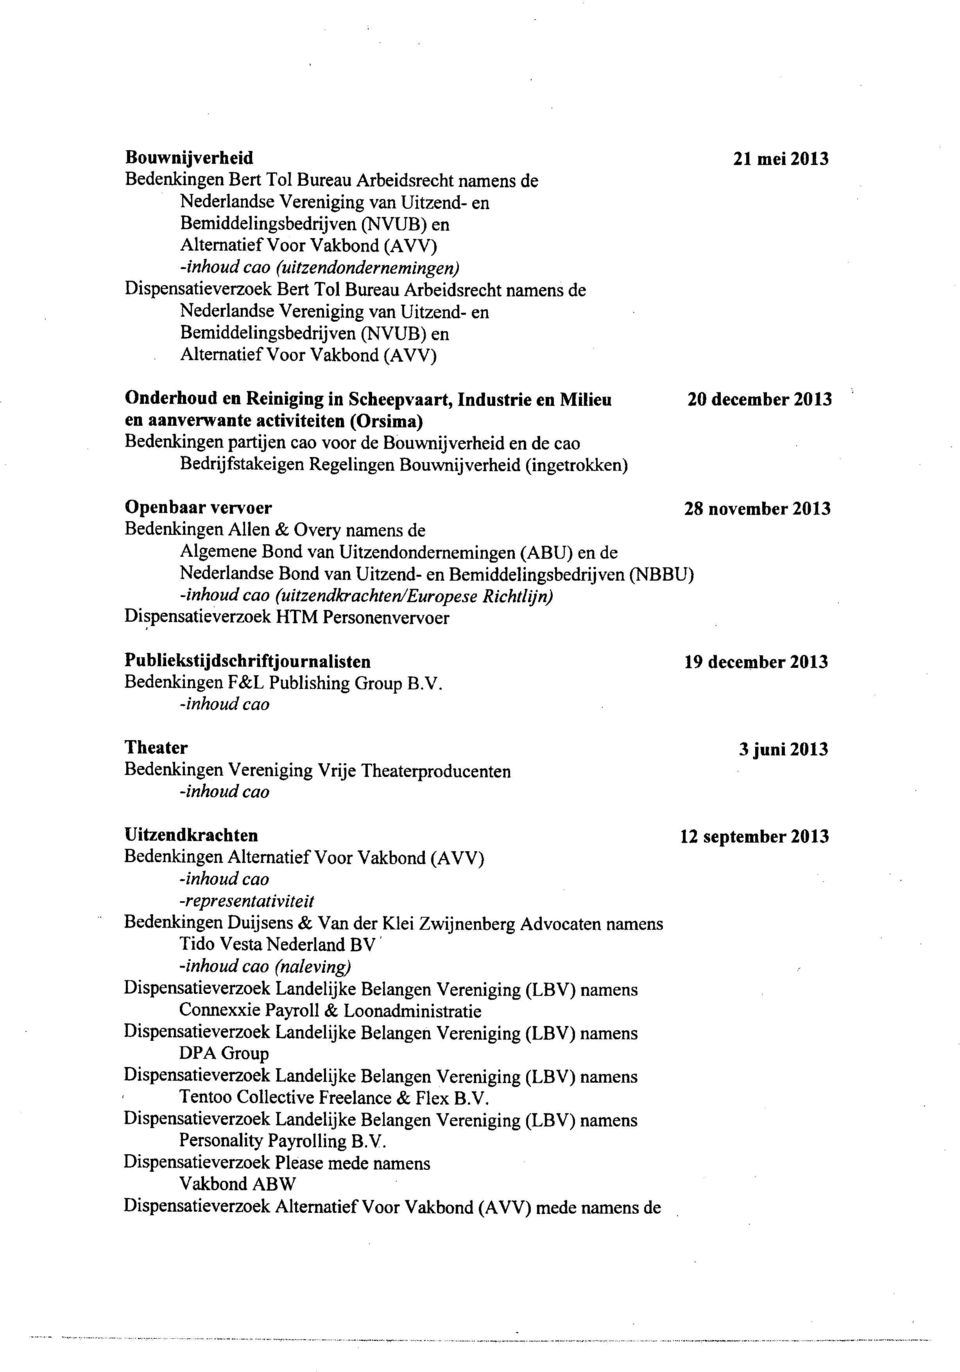 Reiniging in Scheepvaart, Industrie en Milieu 20 december 2013 en aanverwante activiteiten (Orsima) Bedenkingen partijen cao voor de Bouwnijverheid en de cao Bedrijfstakeigen Regelingen